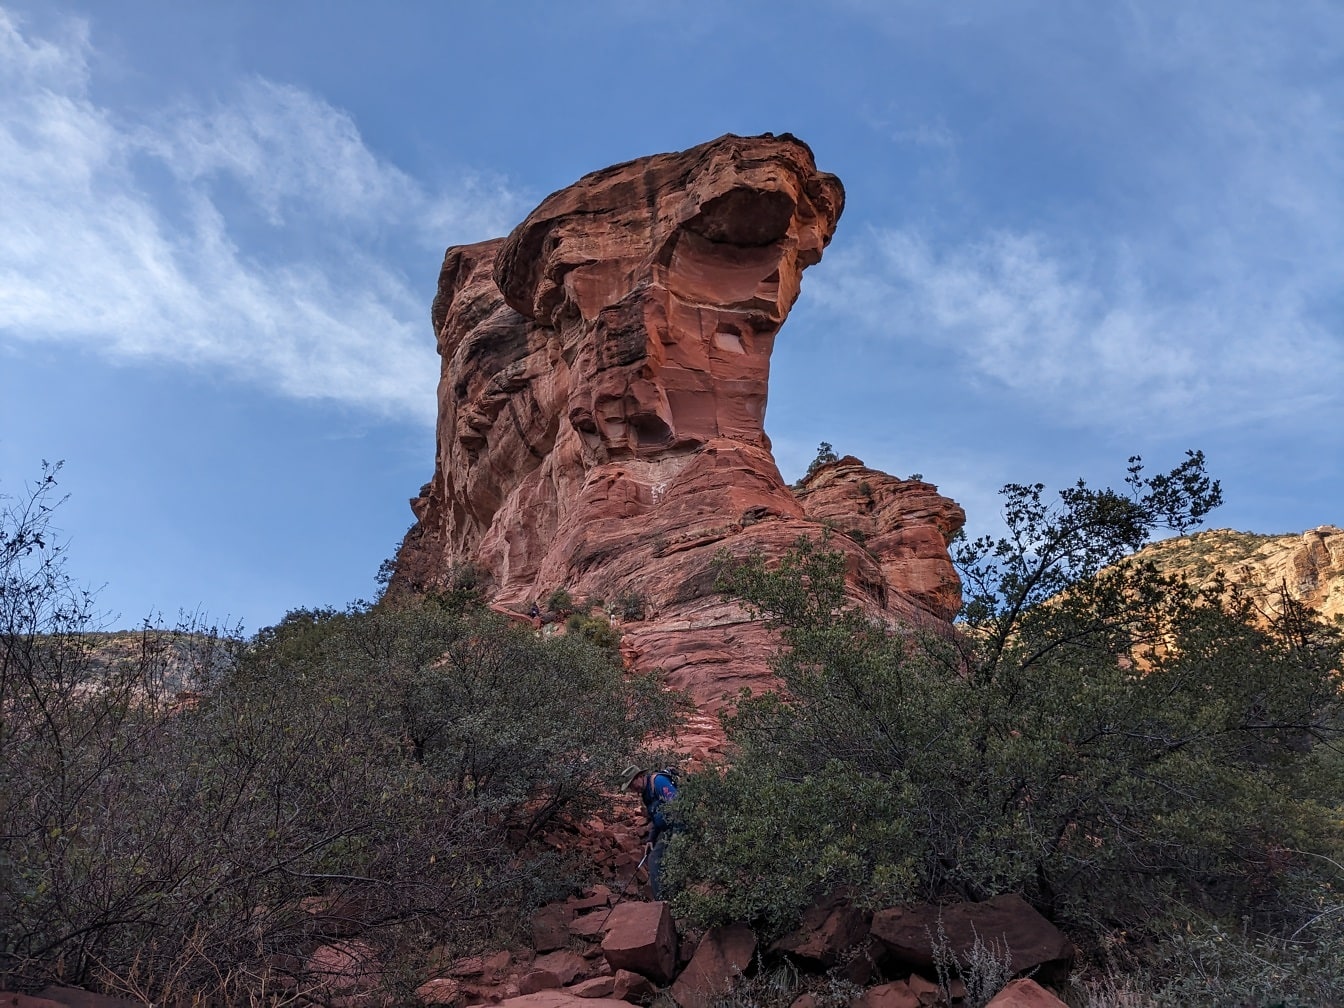 Grimpeur dans une formation rocheuse de grès dans le désert de Sedona en Arizona